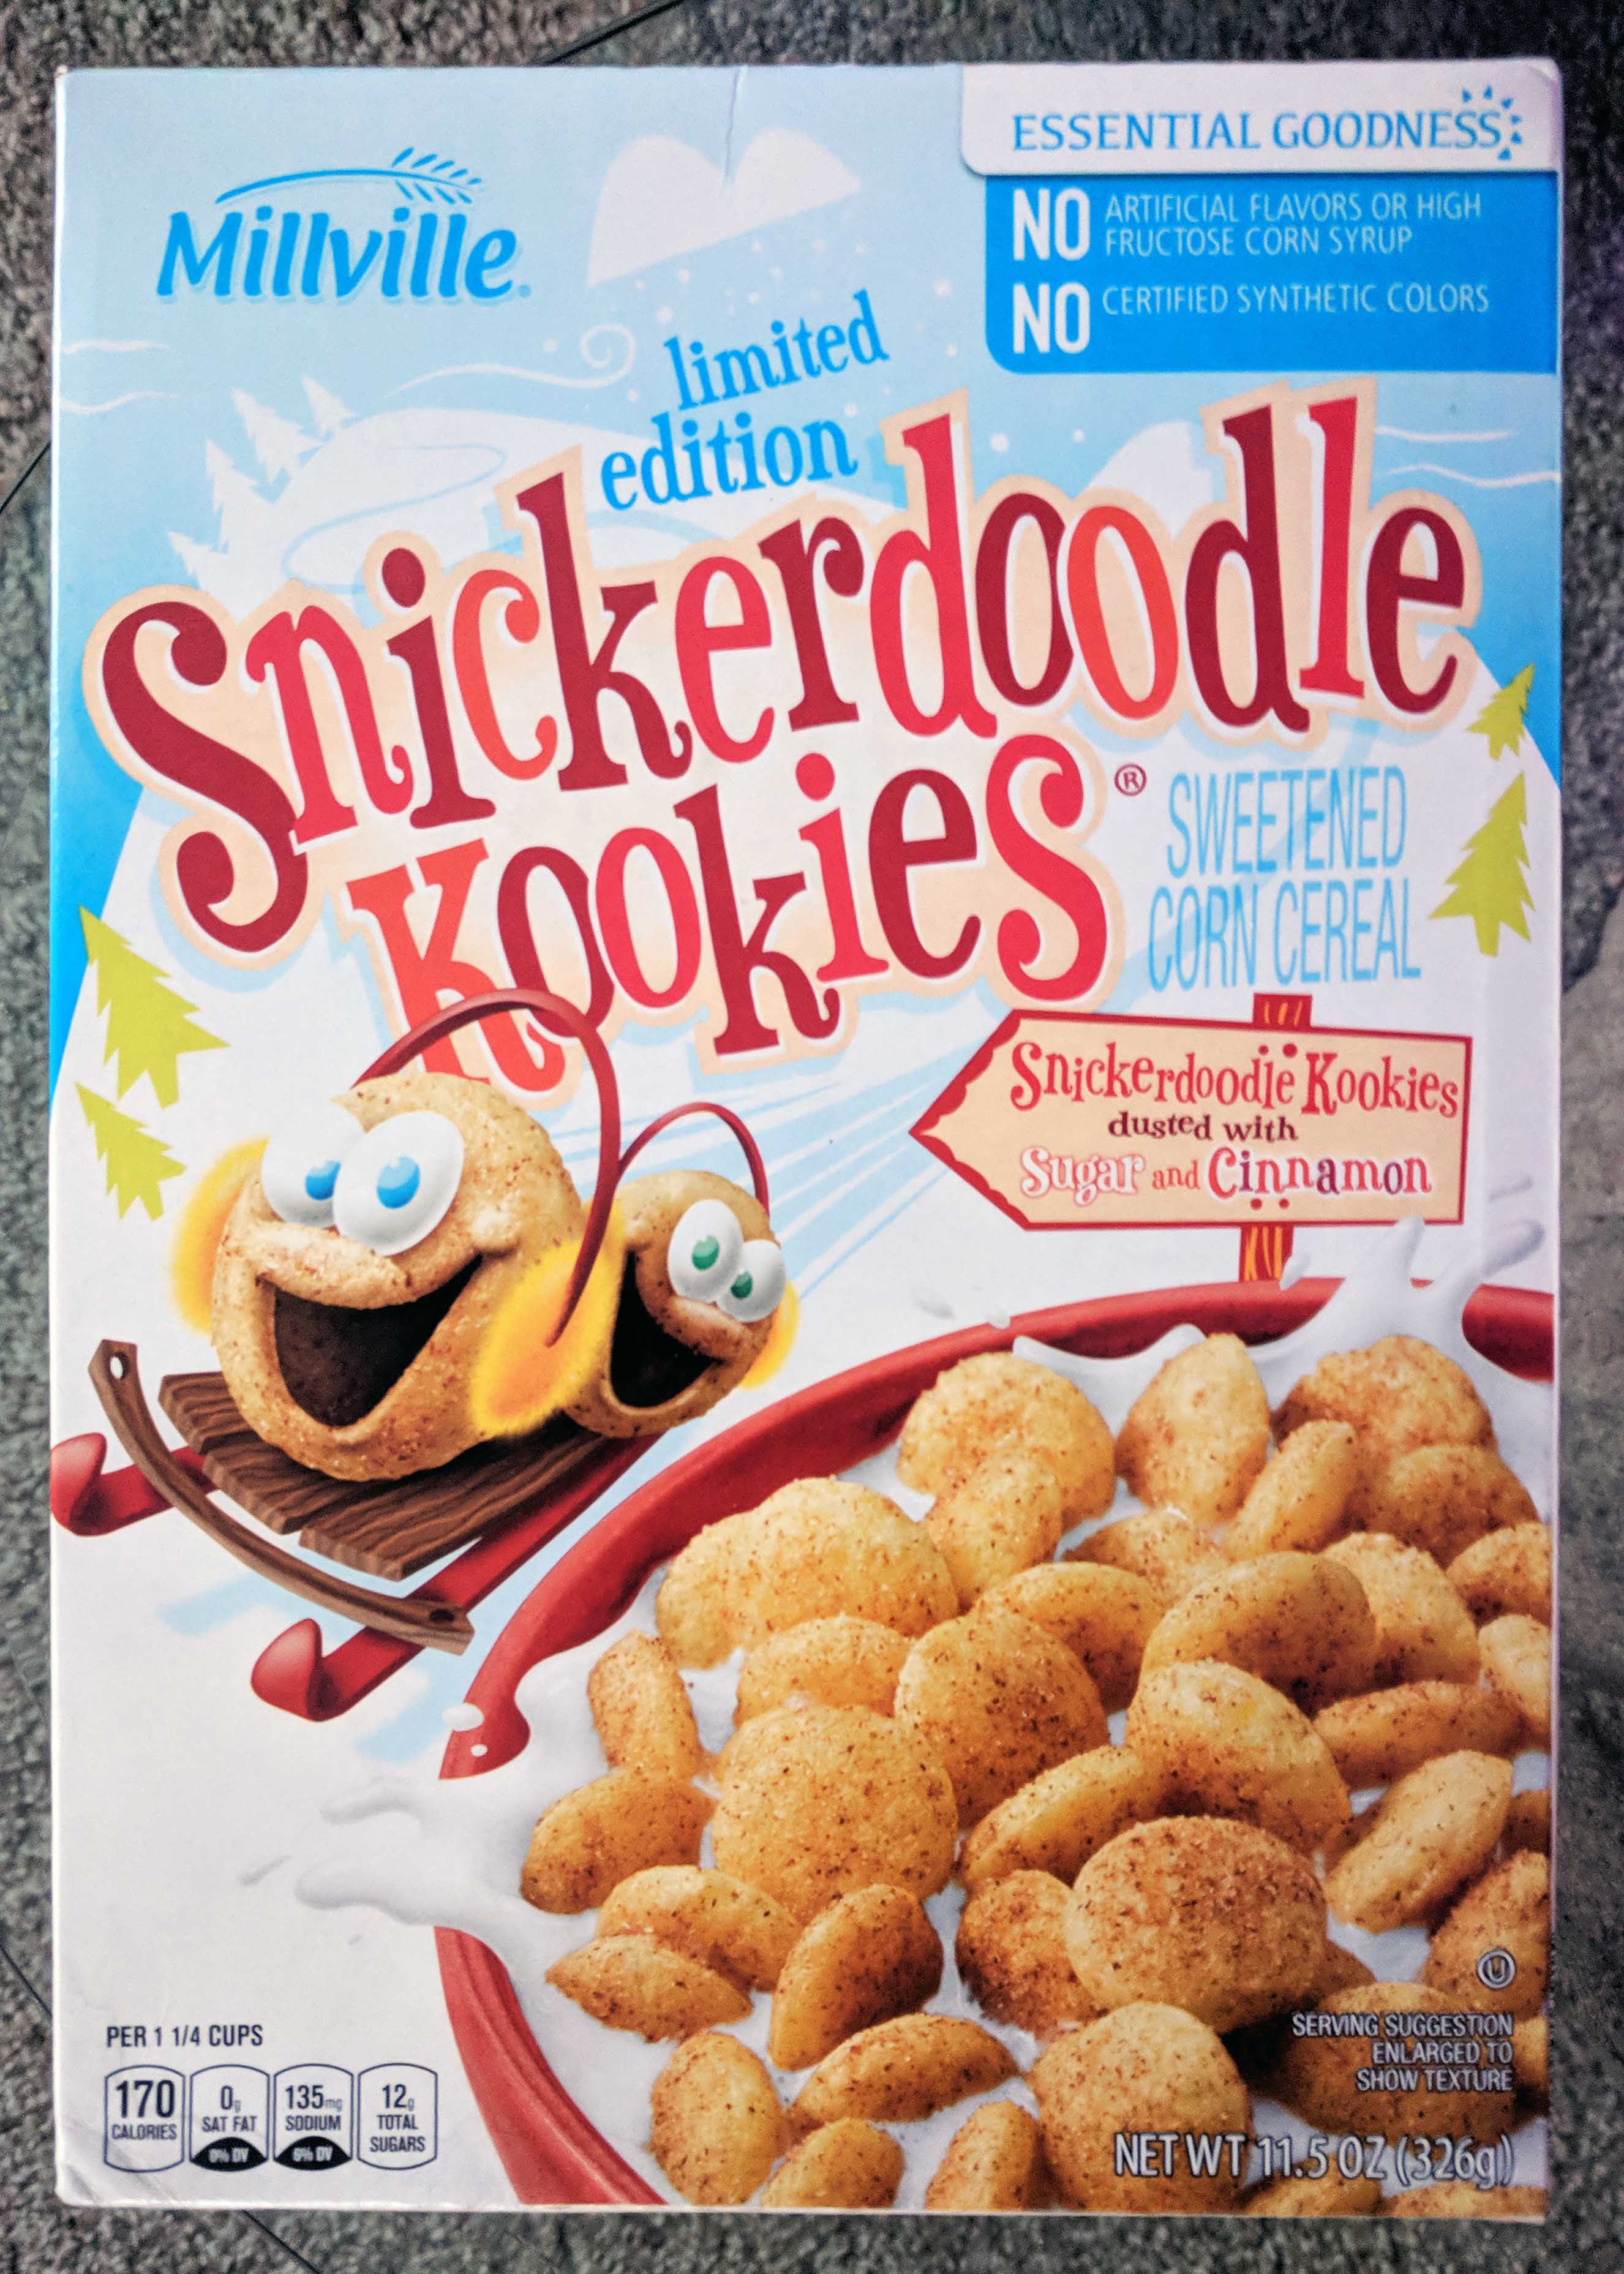 millville-aldi-snickerdoodle-kookies-cereal-review-box.jpg